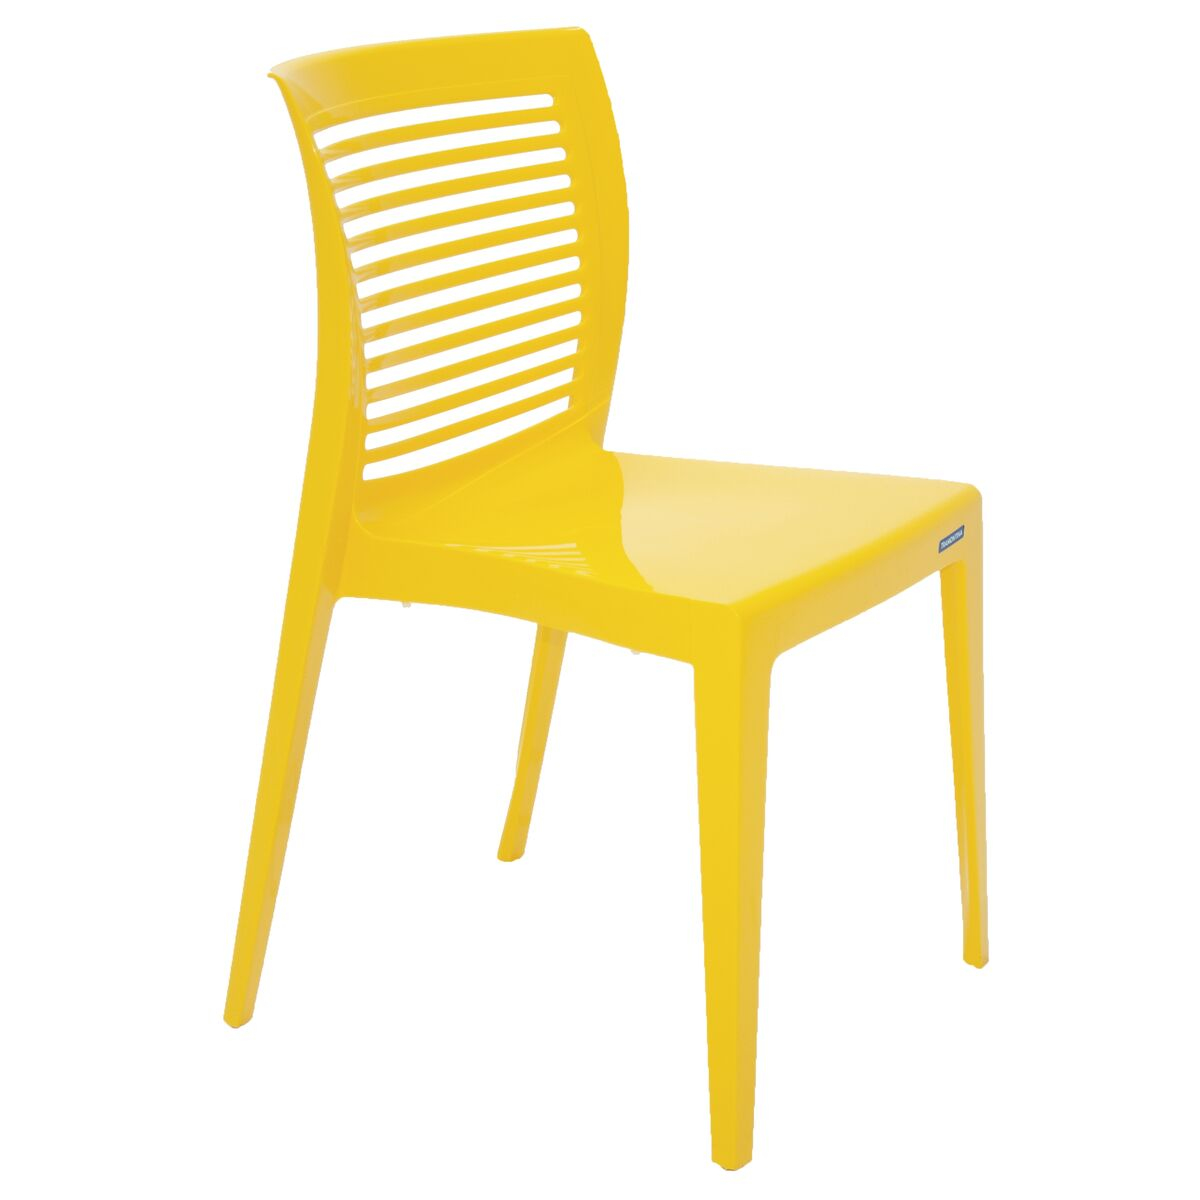 Cadeira Tramontina Victória em Polipropileno Amarelo com Encosto Horizontal